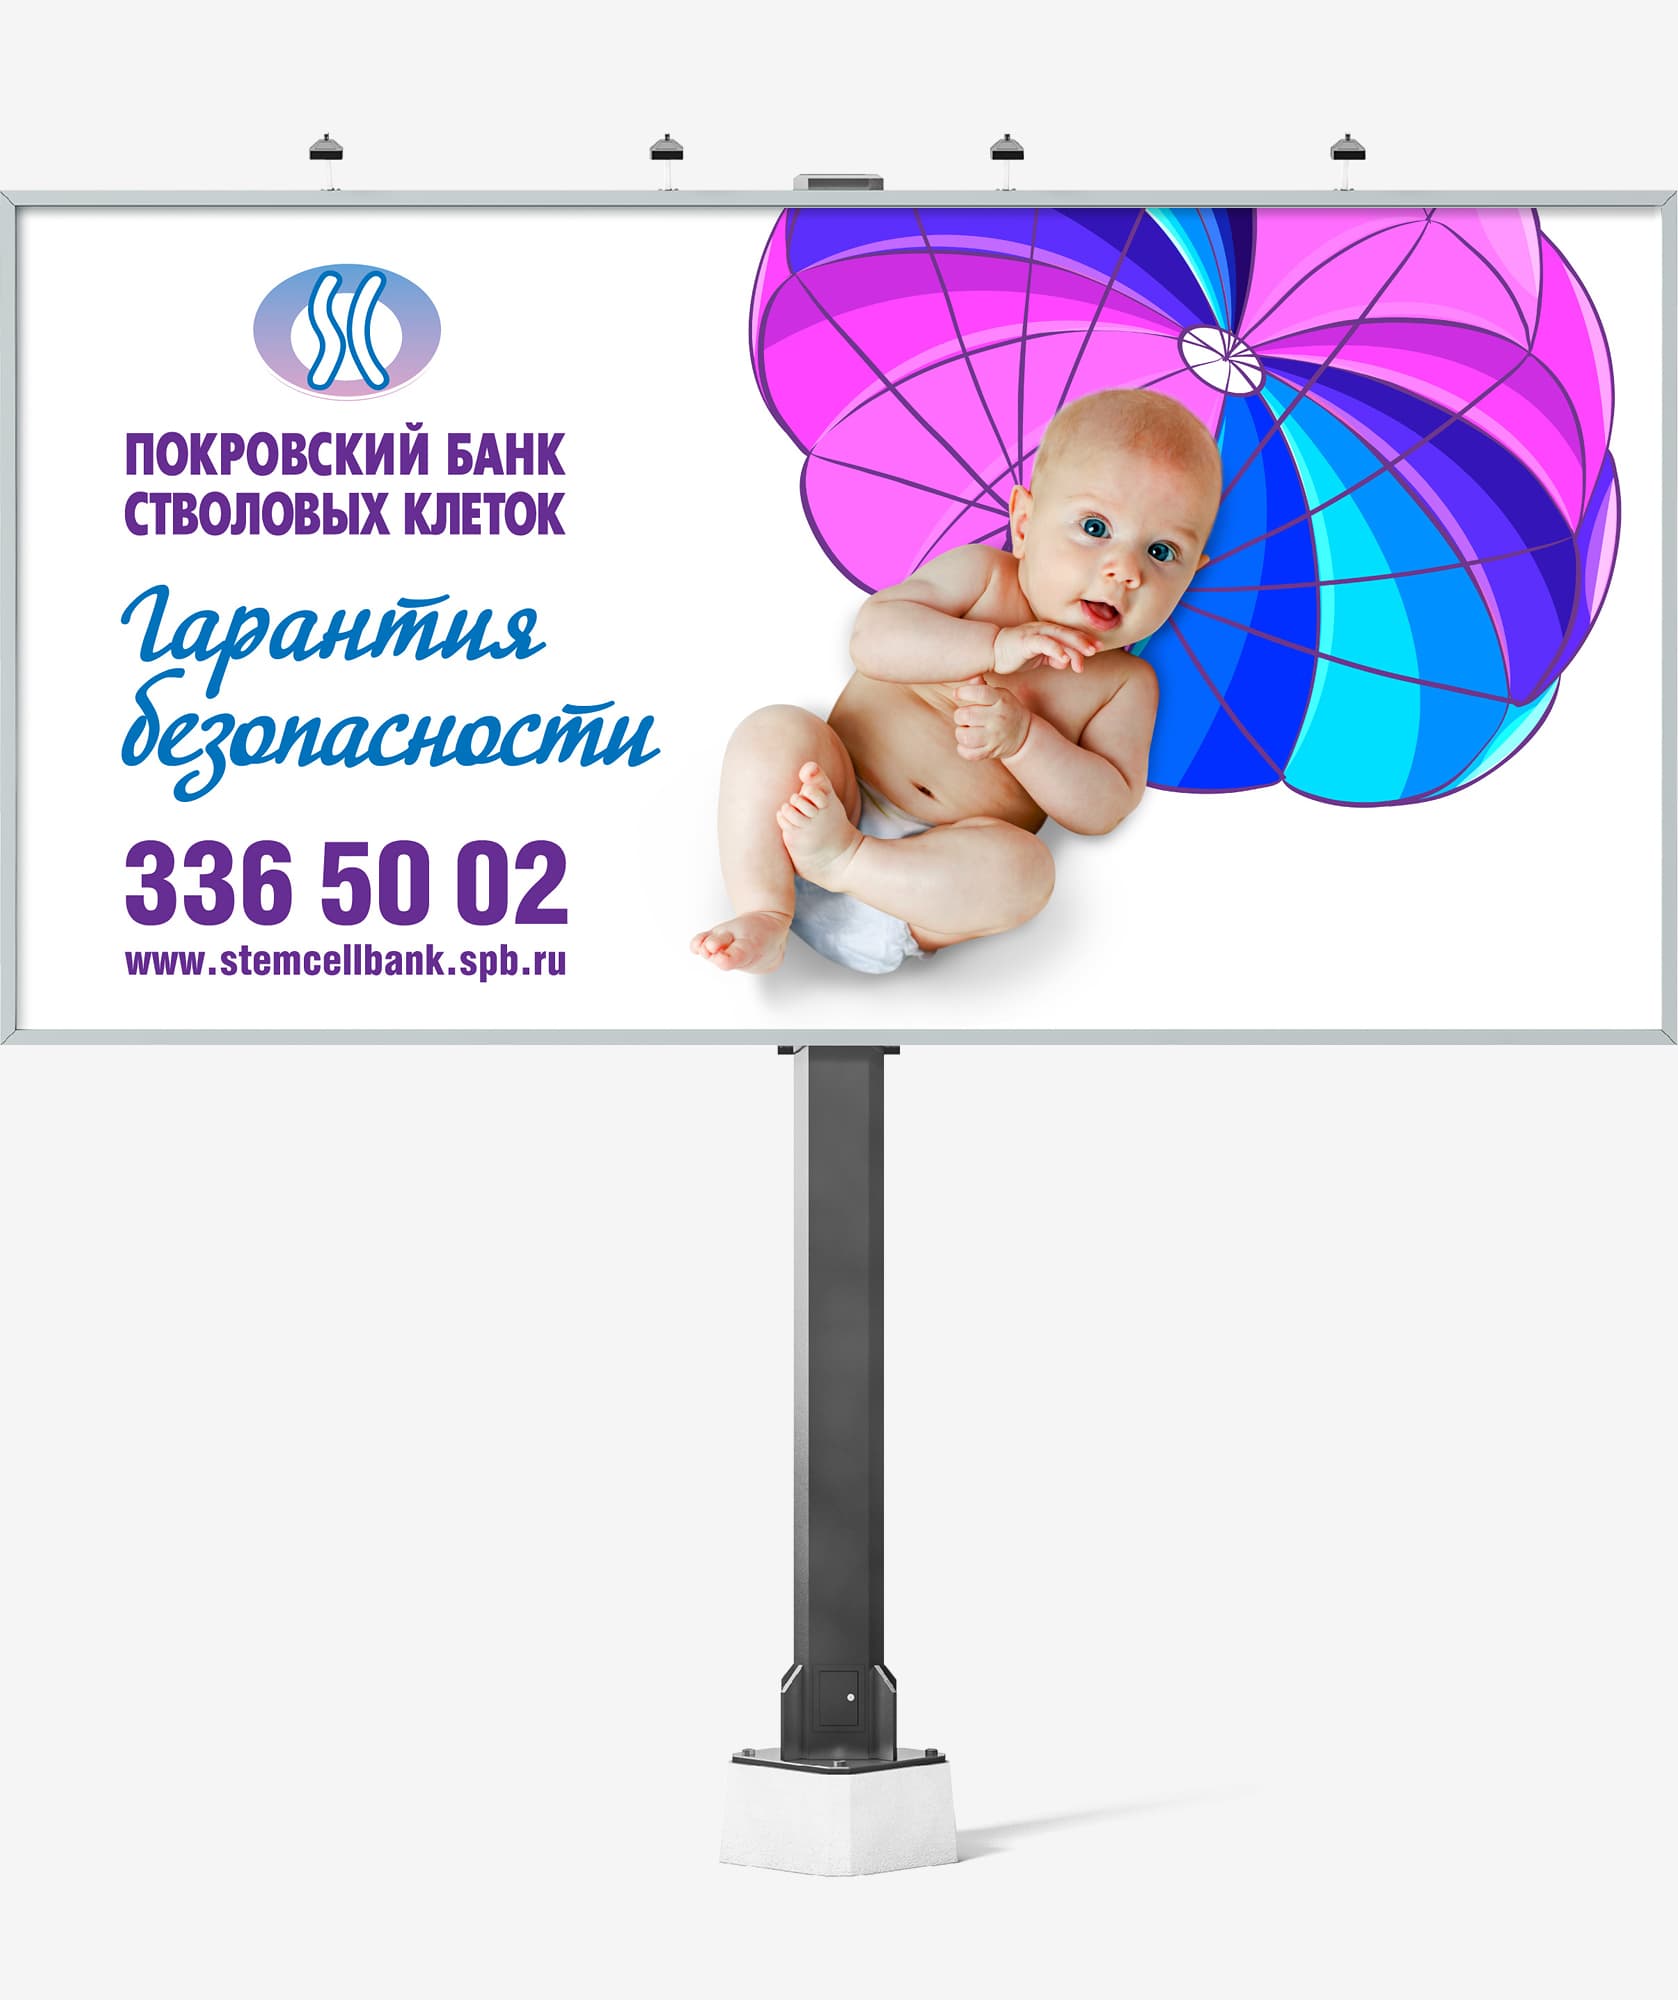 Разработка креативной идеи и дизайн рекламного билборда для компании «Покровский банк стволовых клеток»